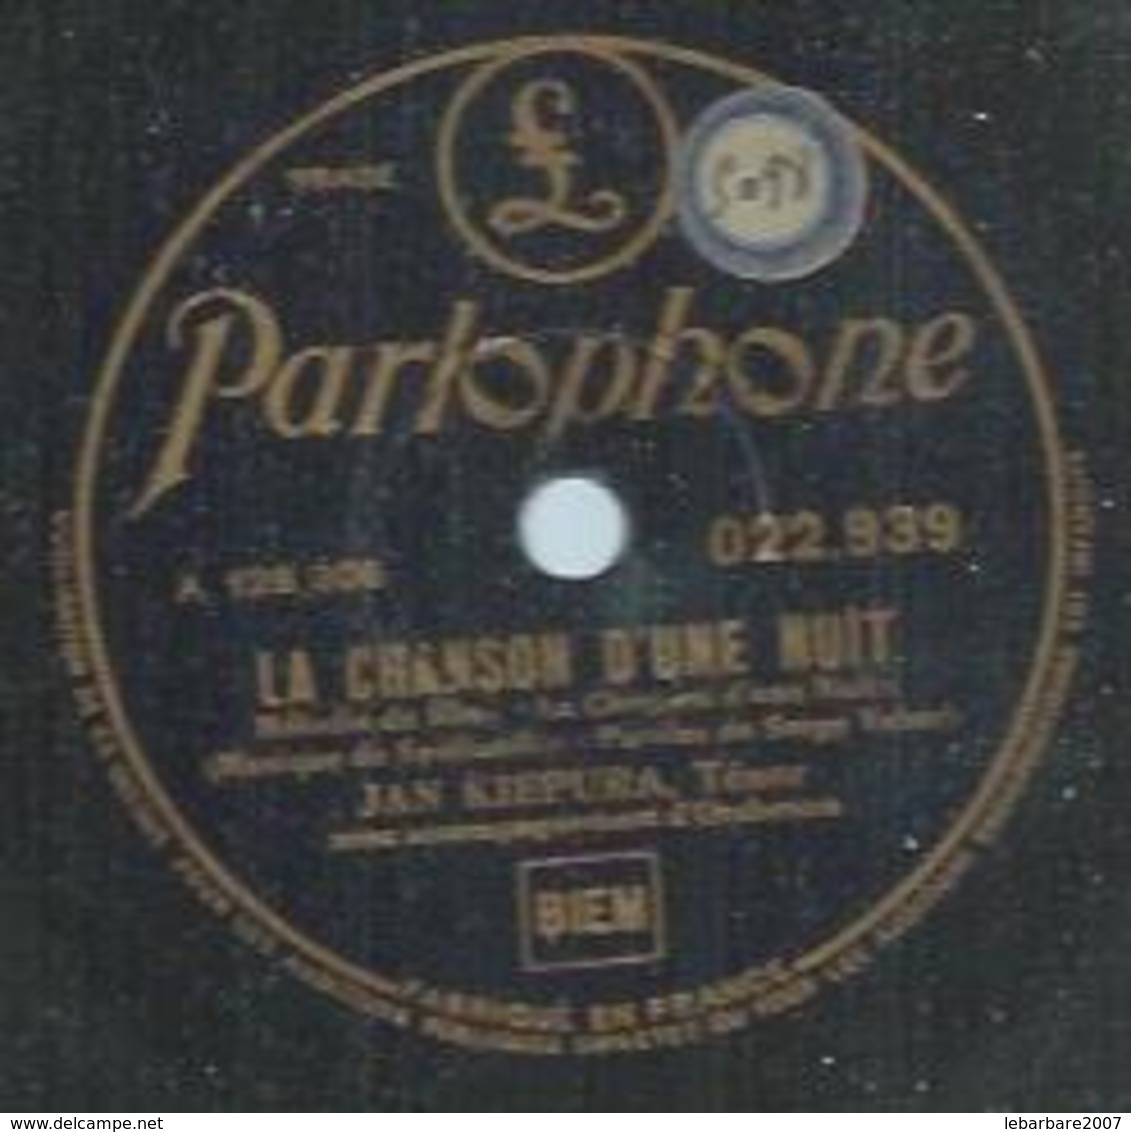 78 Tours - JAN KIEPURA  - PARLOPHONE 22939  " LA CHANSON D'UNE NUIT " + " LA DANZA " - 78 T - Disques Pour Gramophone